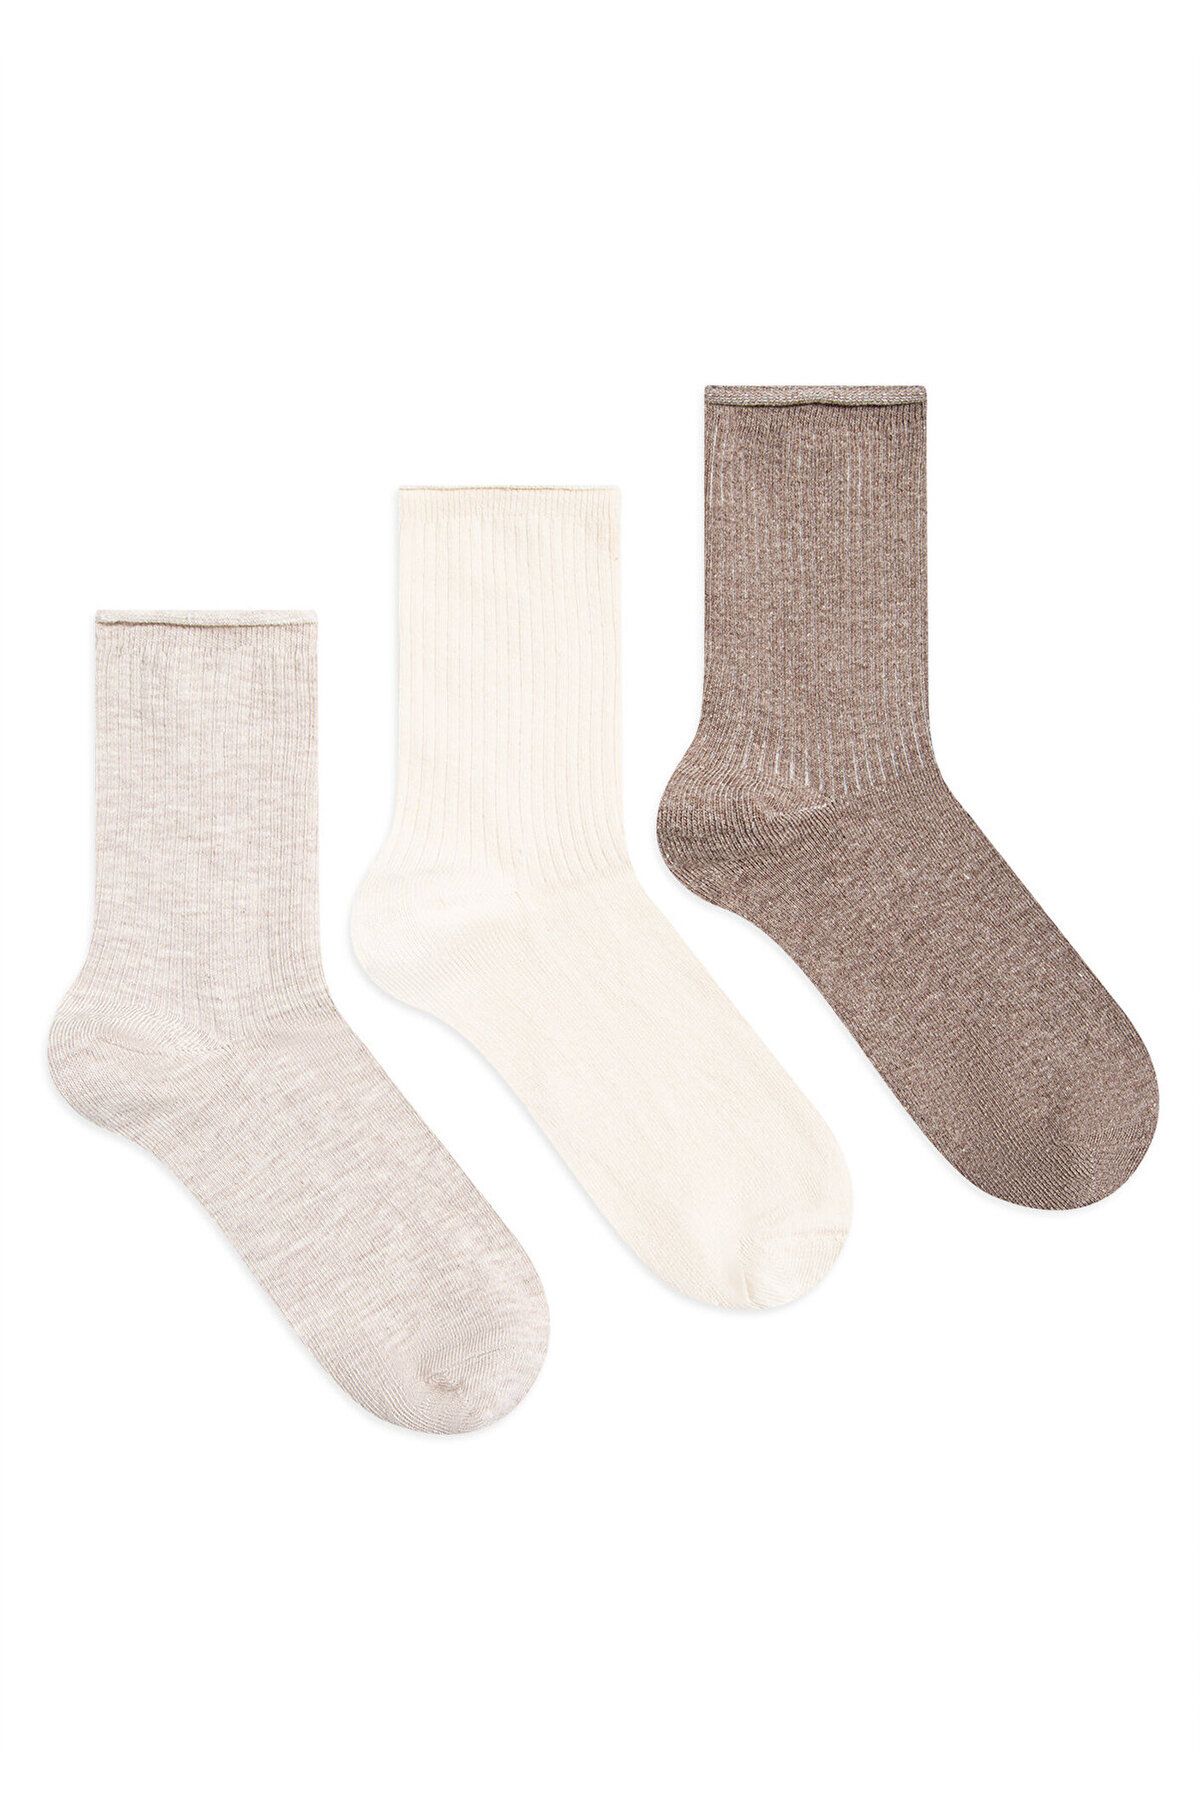 Mavi 3lü Soket Çorap Seti 1912076-80084